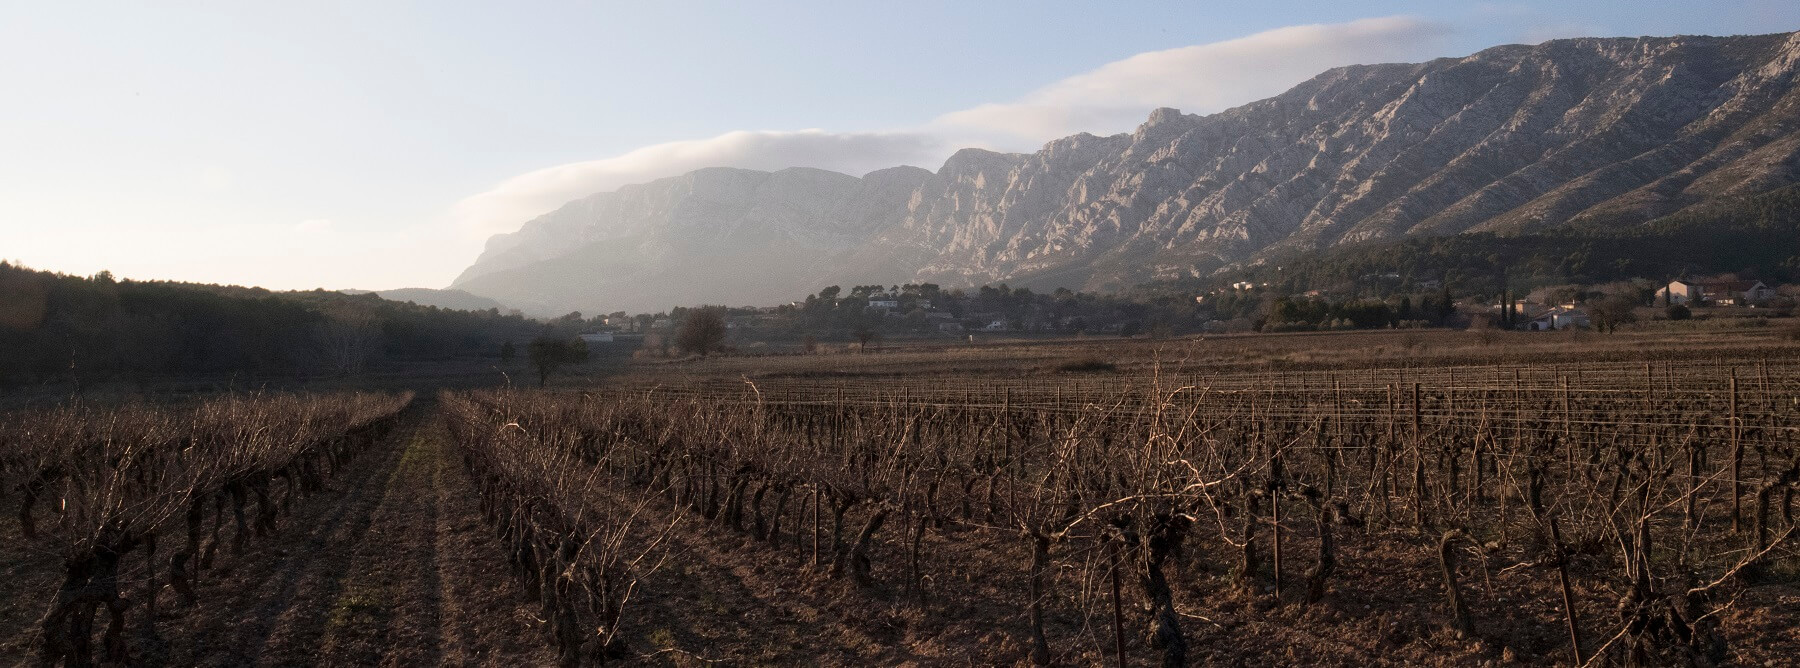 Les vins de Provence : un millésime 2019 équilibré et structuré